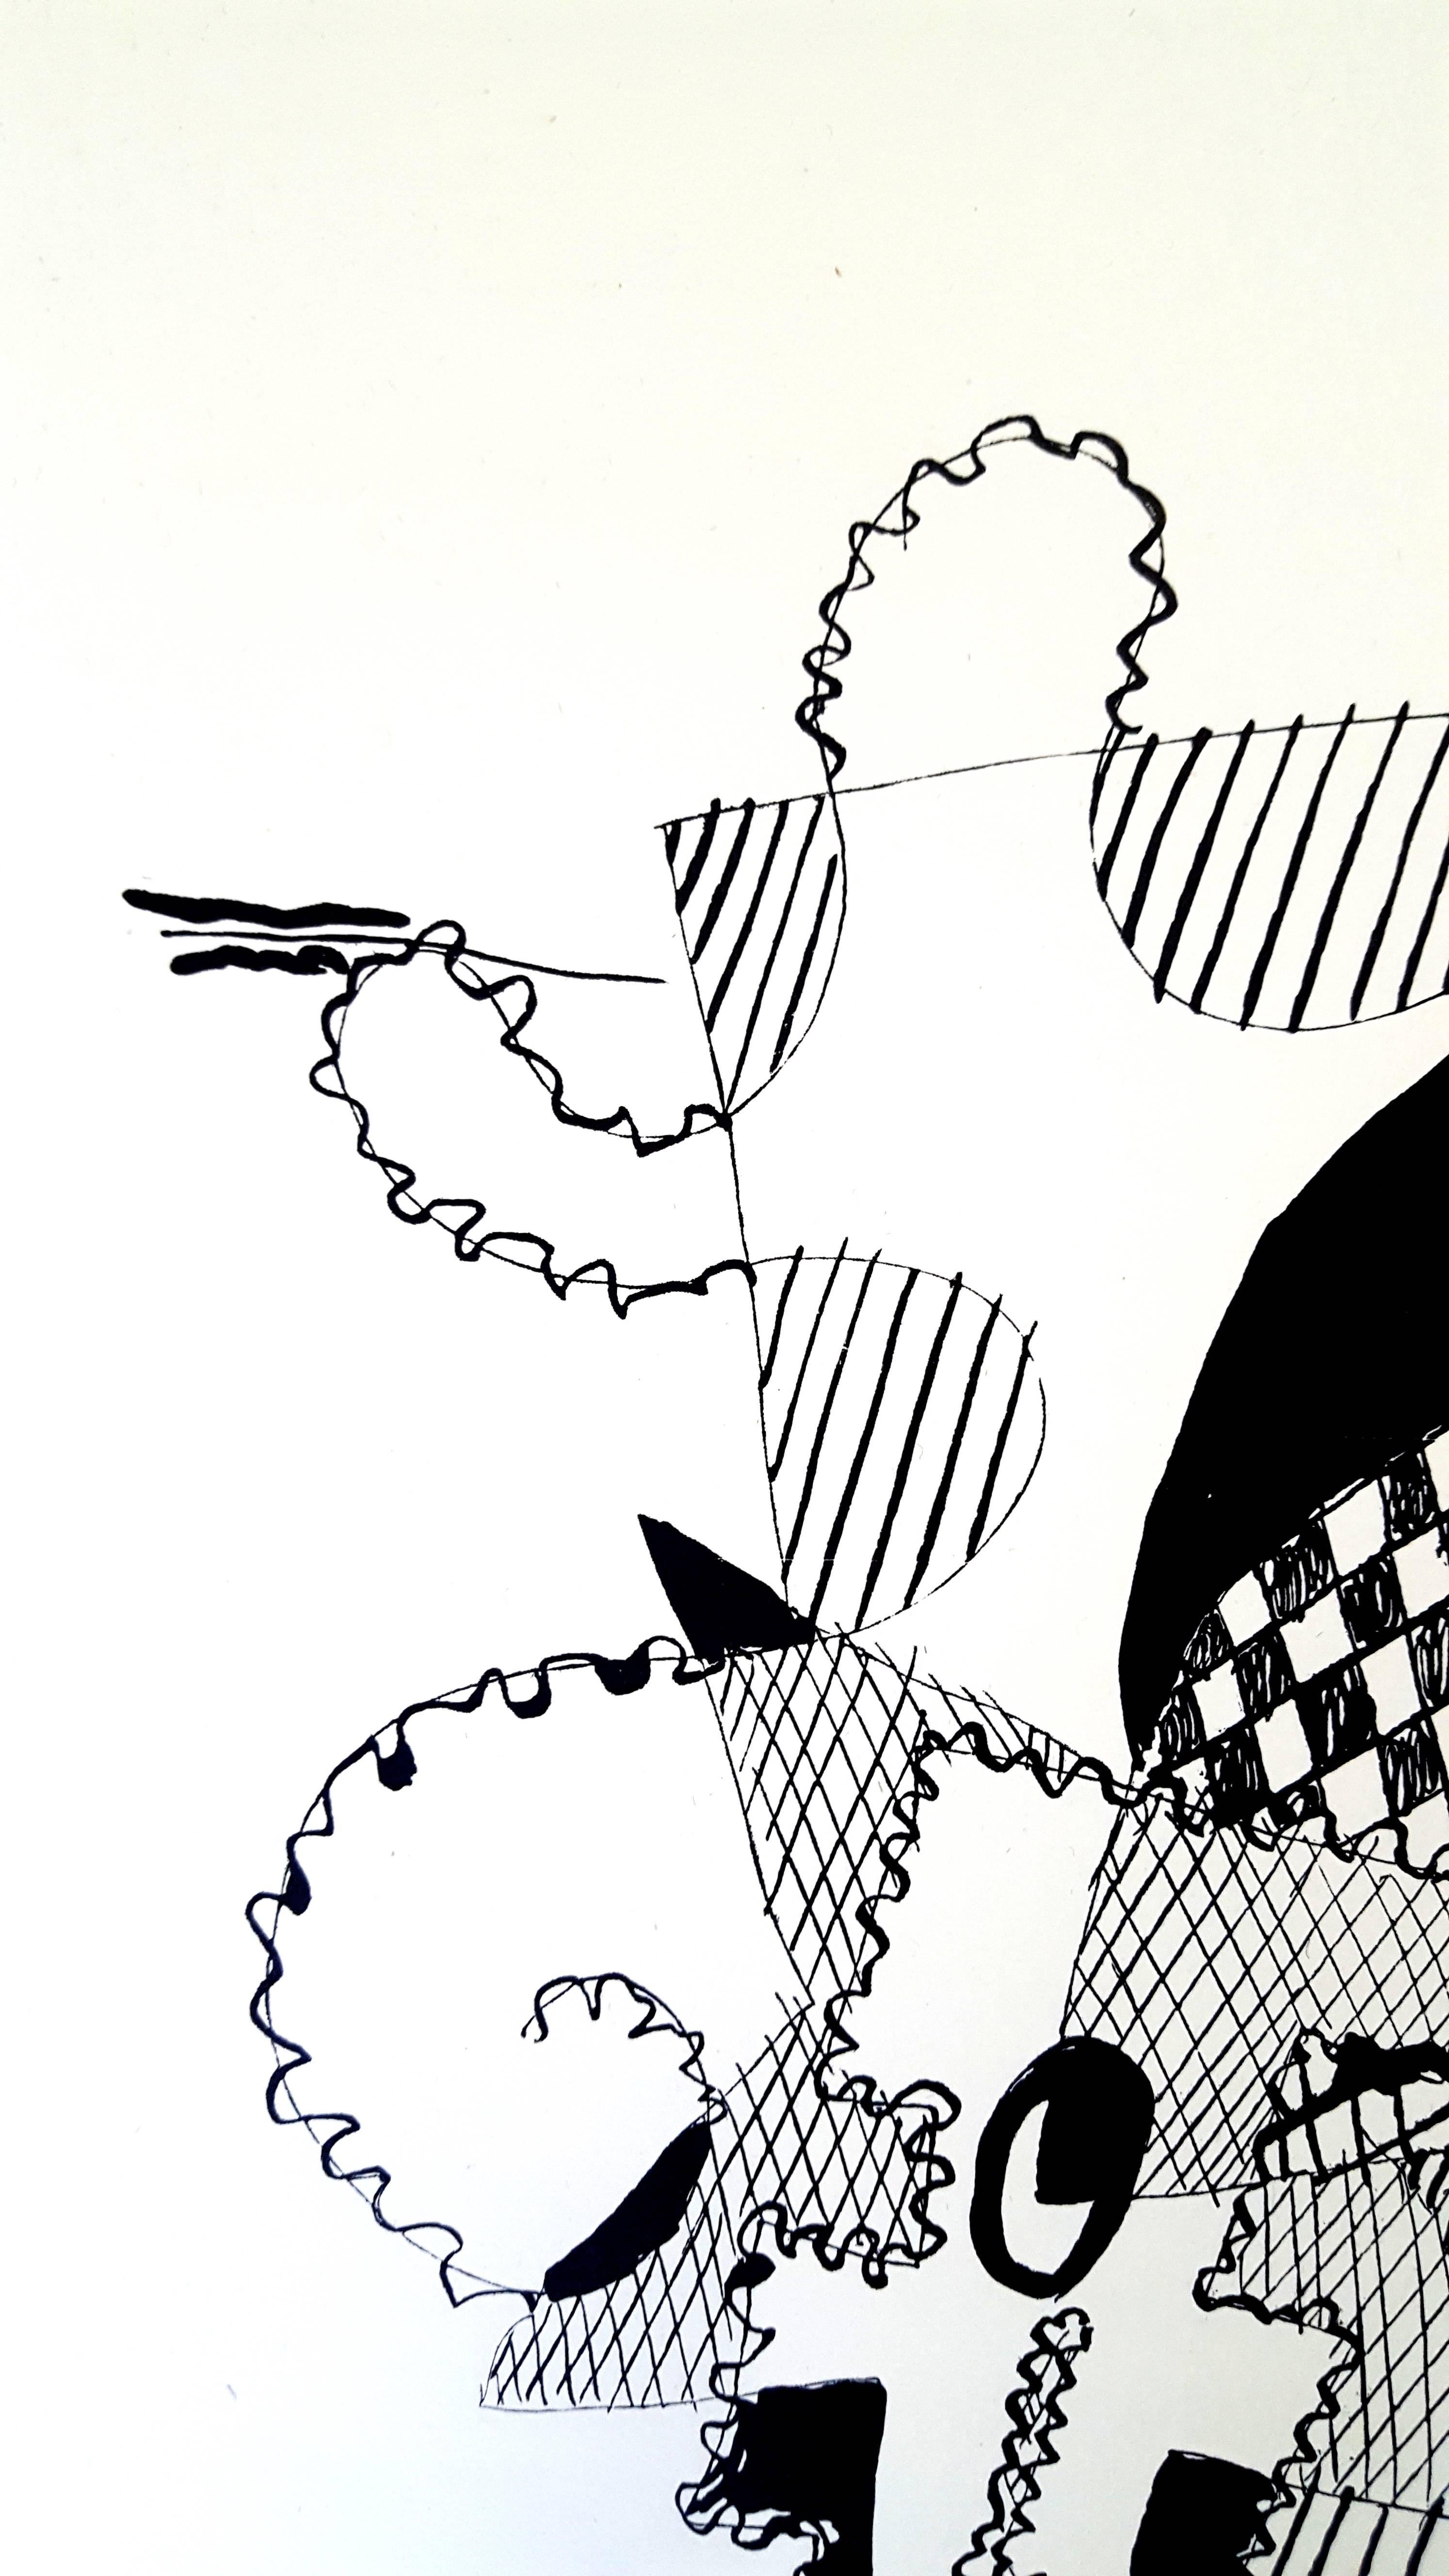 Pablo Picasso (après) 
Helene Chez Archimede

Support : gravé sur bois par Georges Aubert
Dimensions : 44 x 33 cm
Portfolio : Helen Chez Archimede
Année : 1955
Édition : 240 (Ici, c'est l'un des 140 réservés aux membres du Nouveau Cercle de Paris du